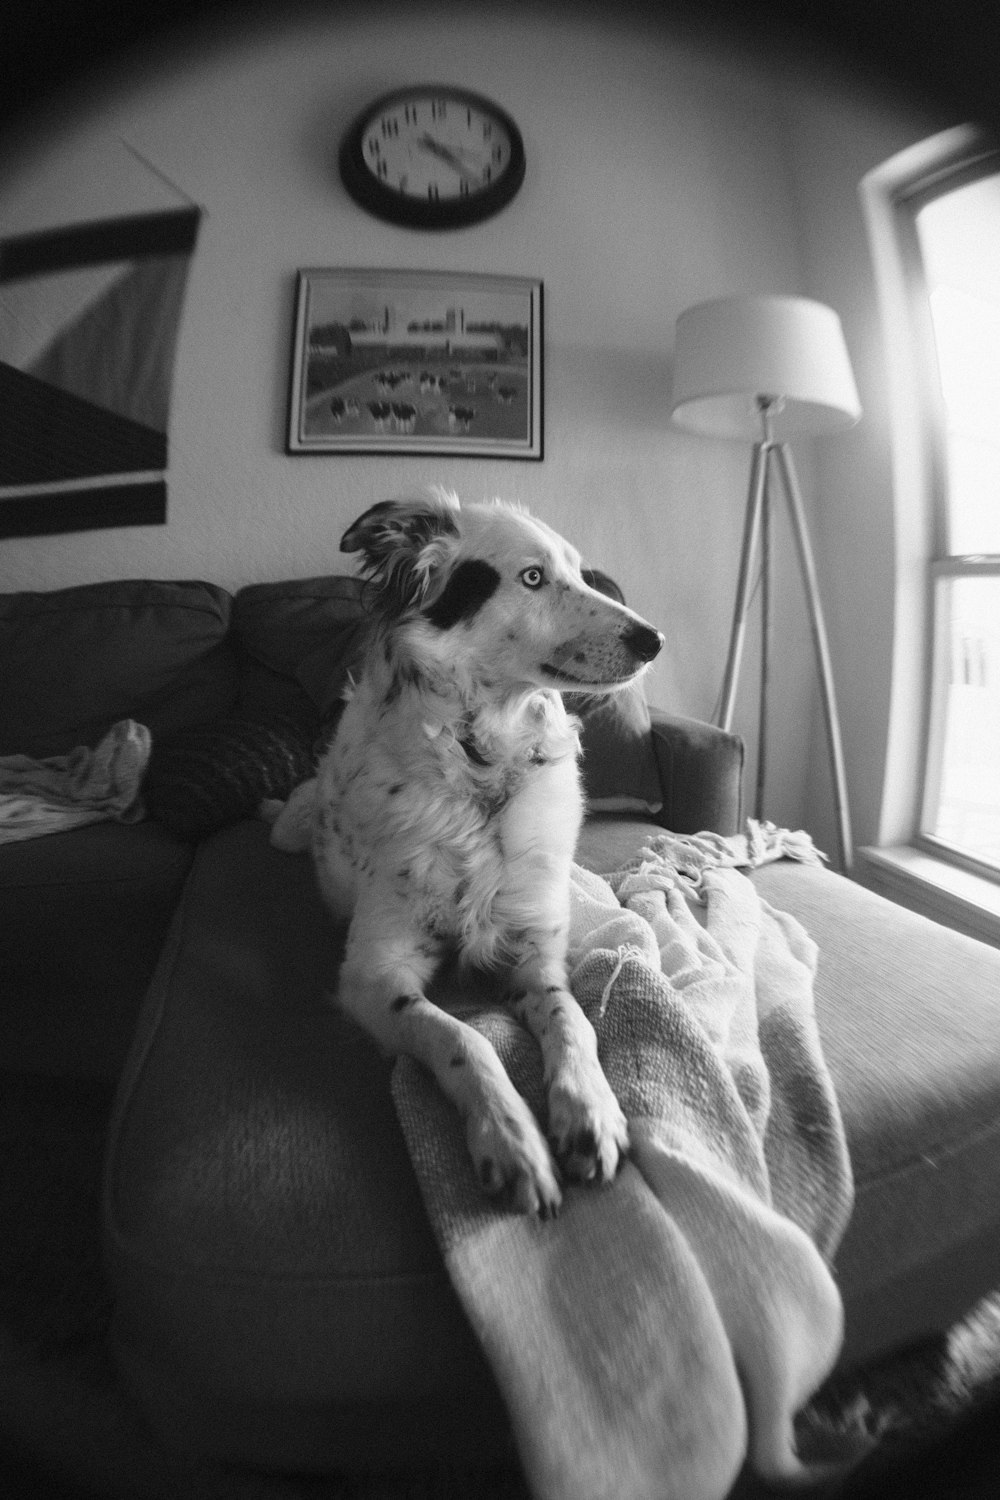 Ein Hund sitzt auf einer Couch mit einer Decke darauf